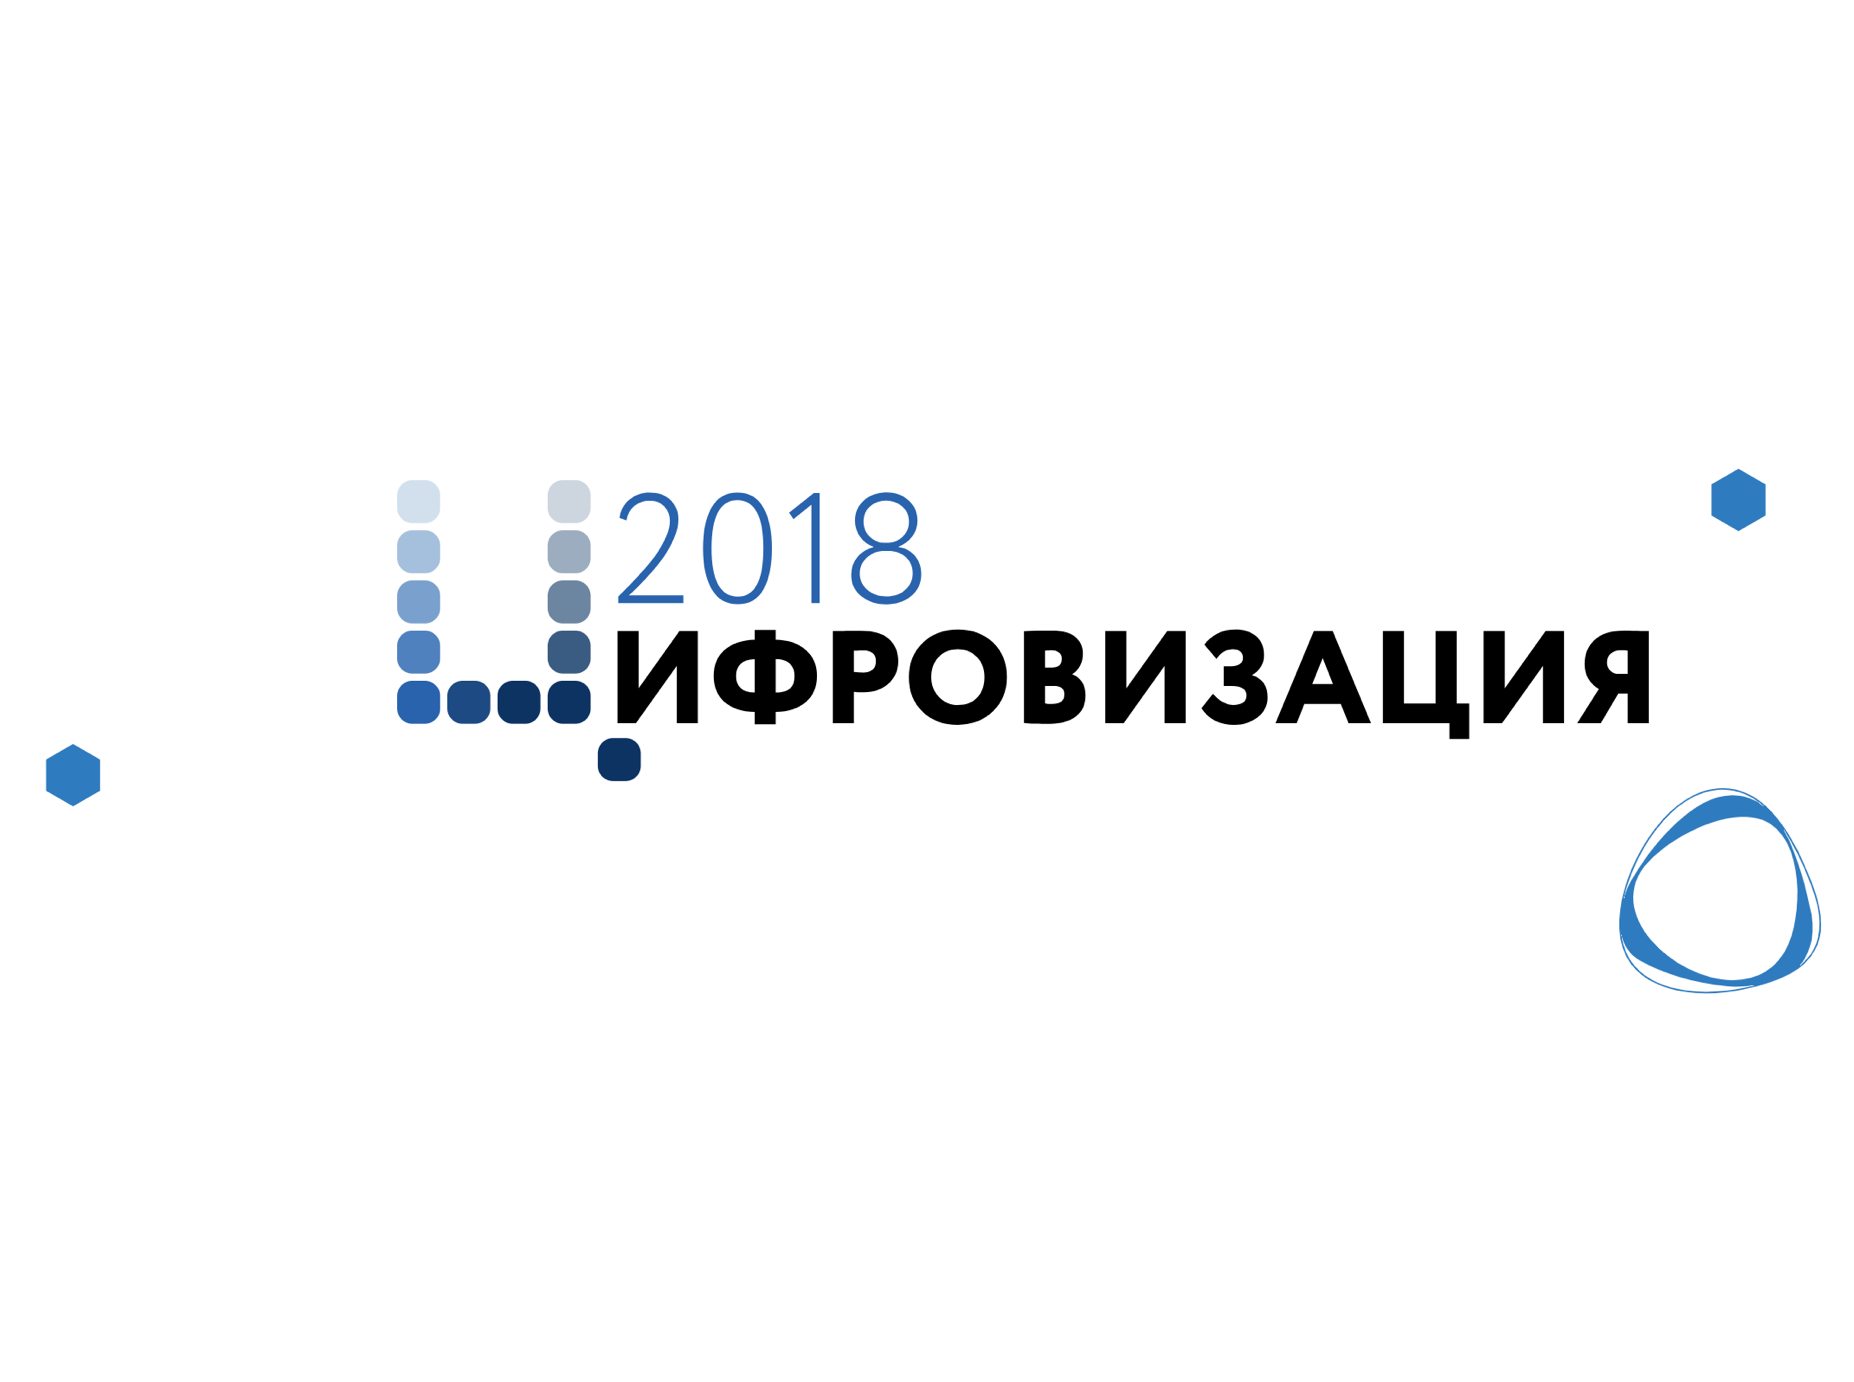 НЦЦЭ Форум Цифровизация 2018 digital.msu.ru